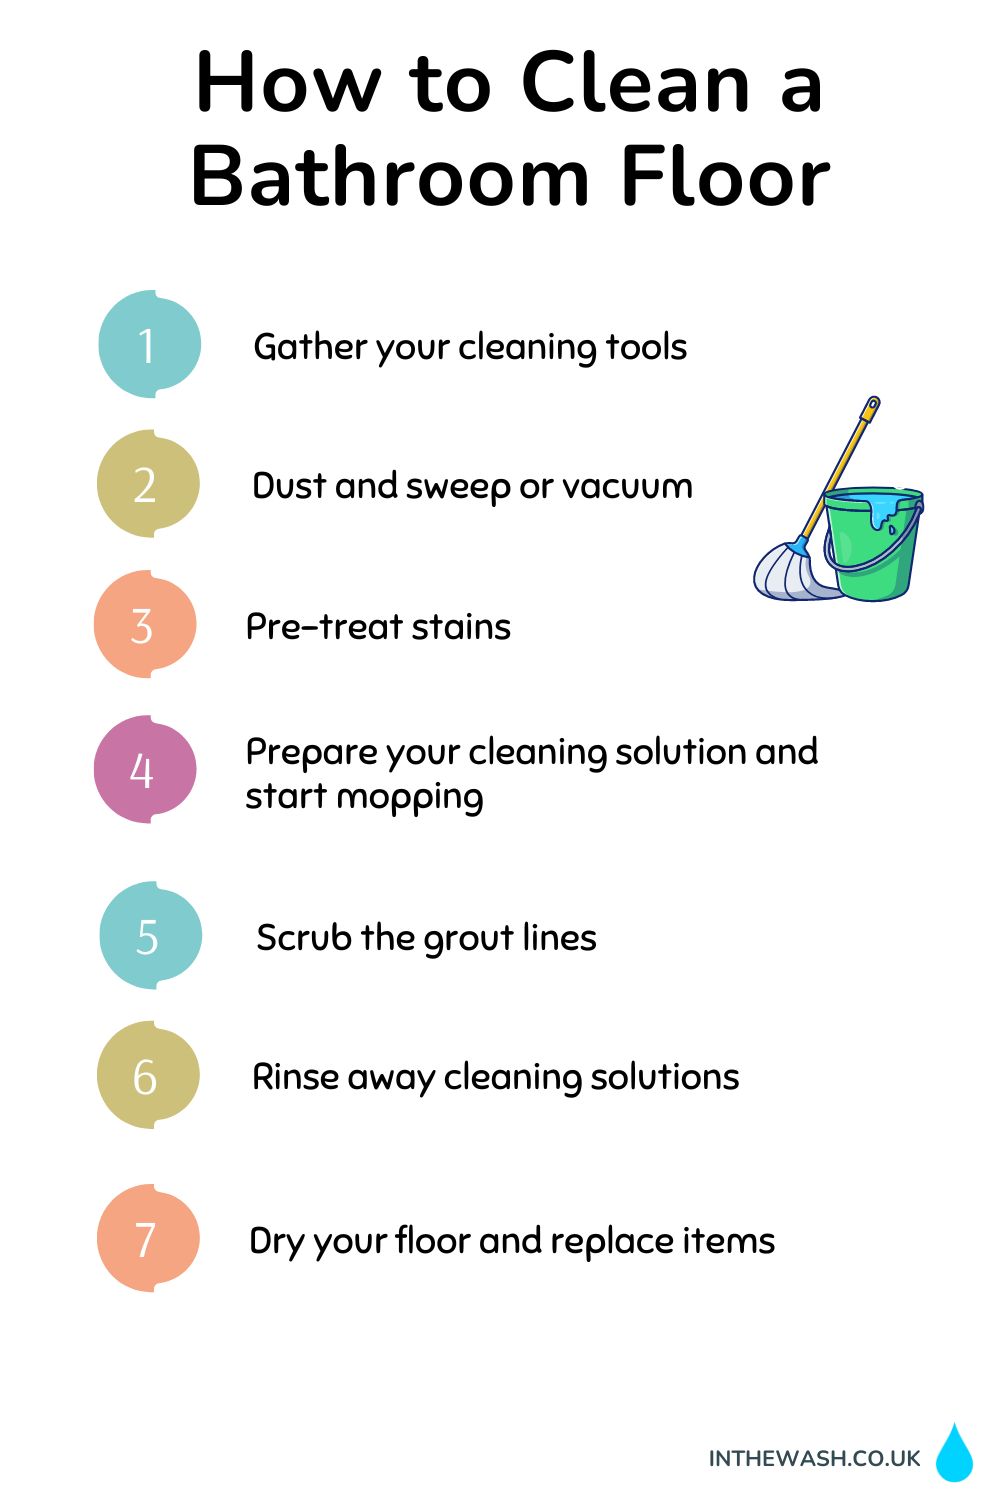 How to Clean a Bathroom Floor